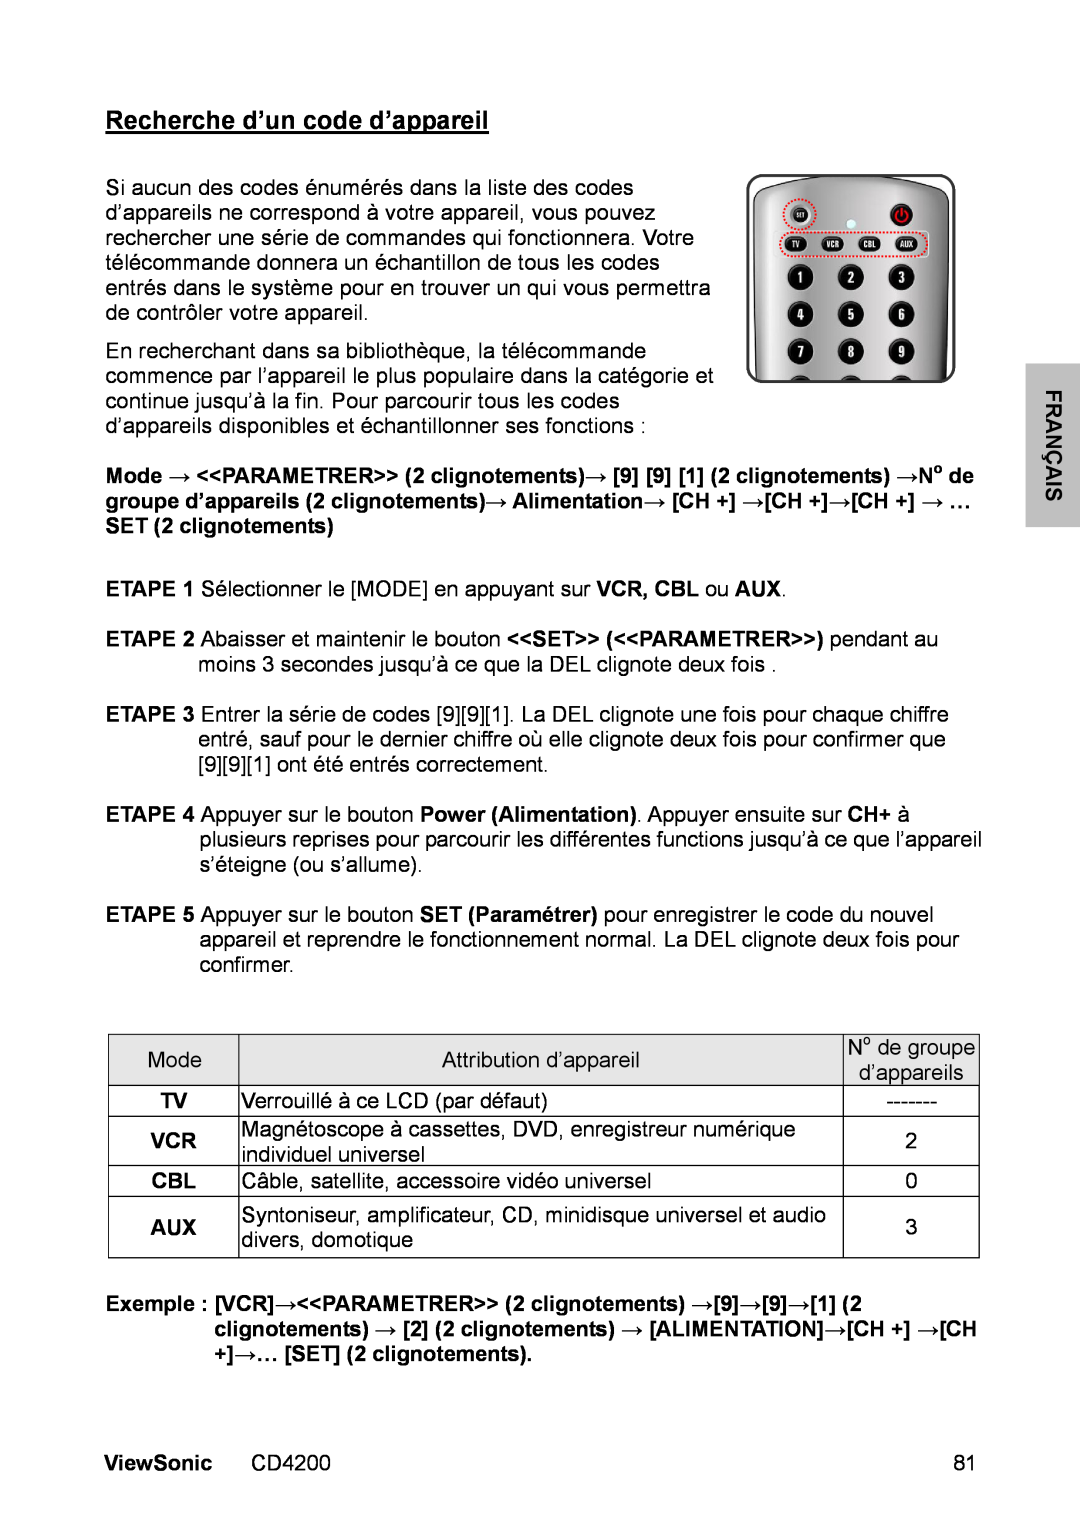 ViewSonic manual Recherche d’un code d’appareil, Français, ViewSonic CD4200 